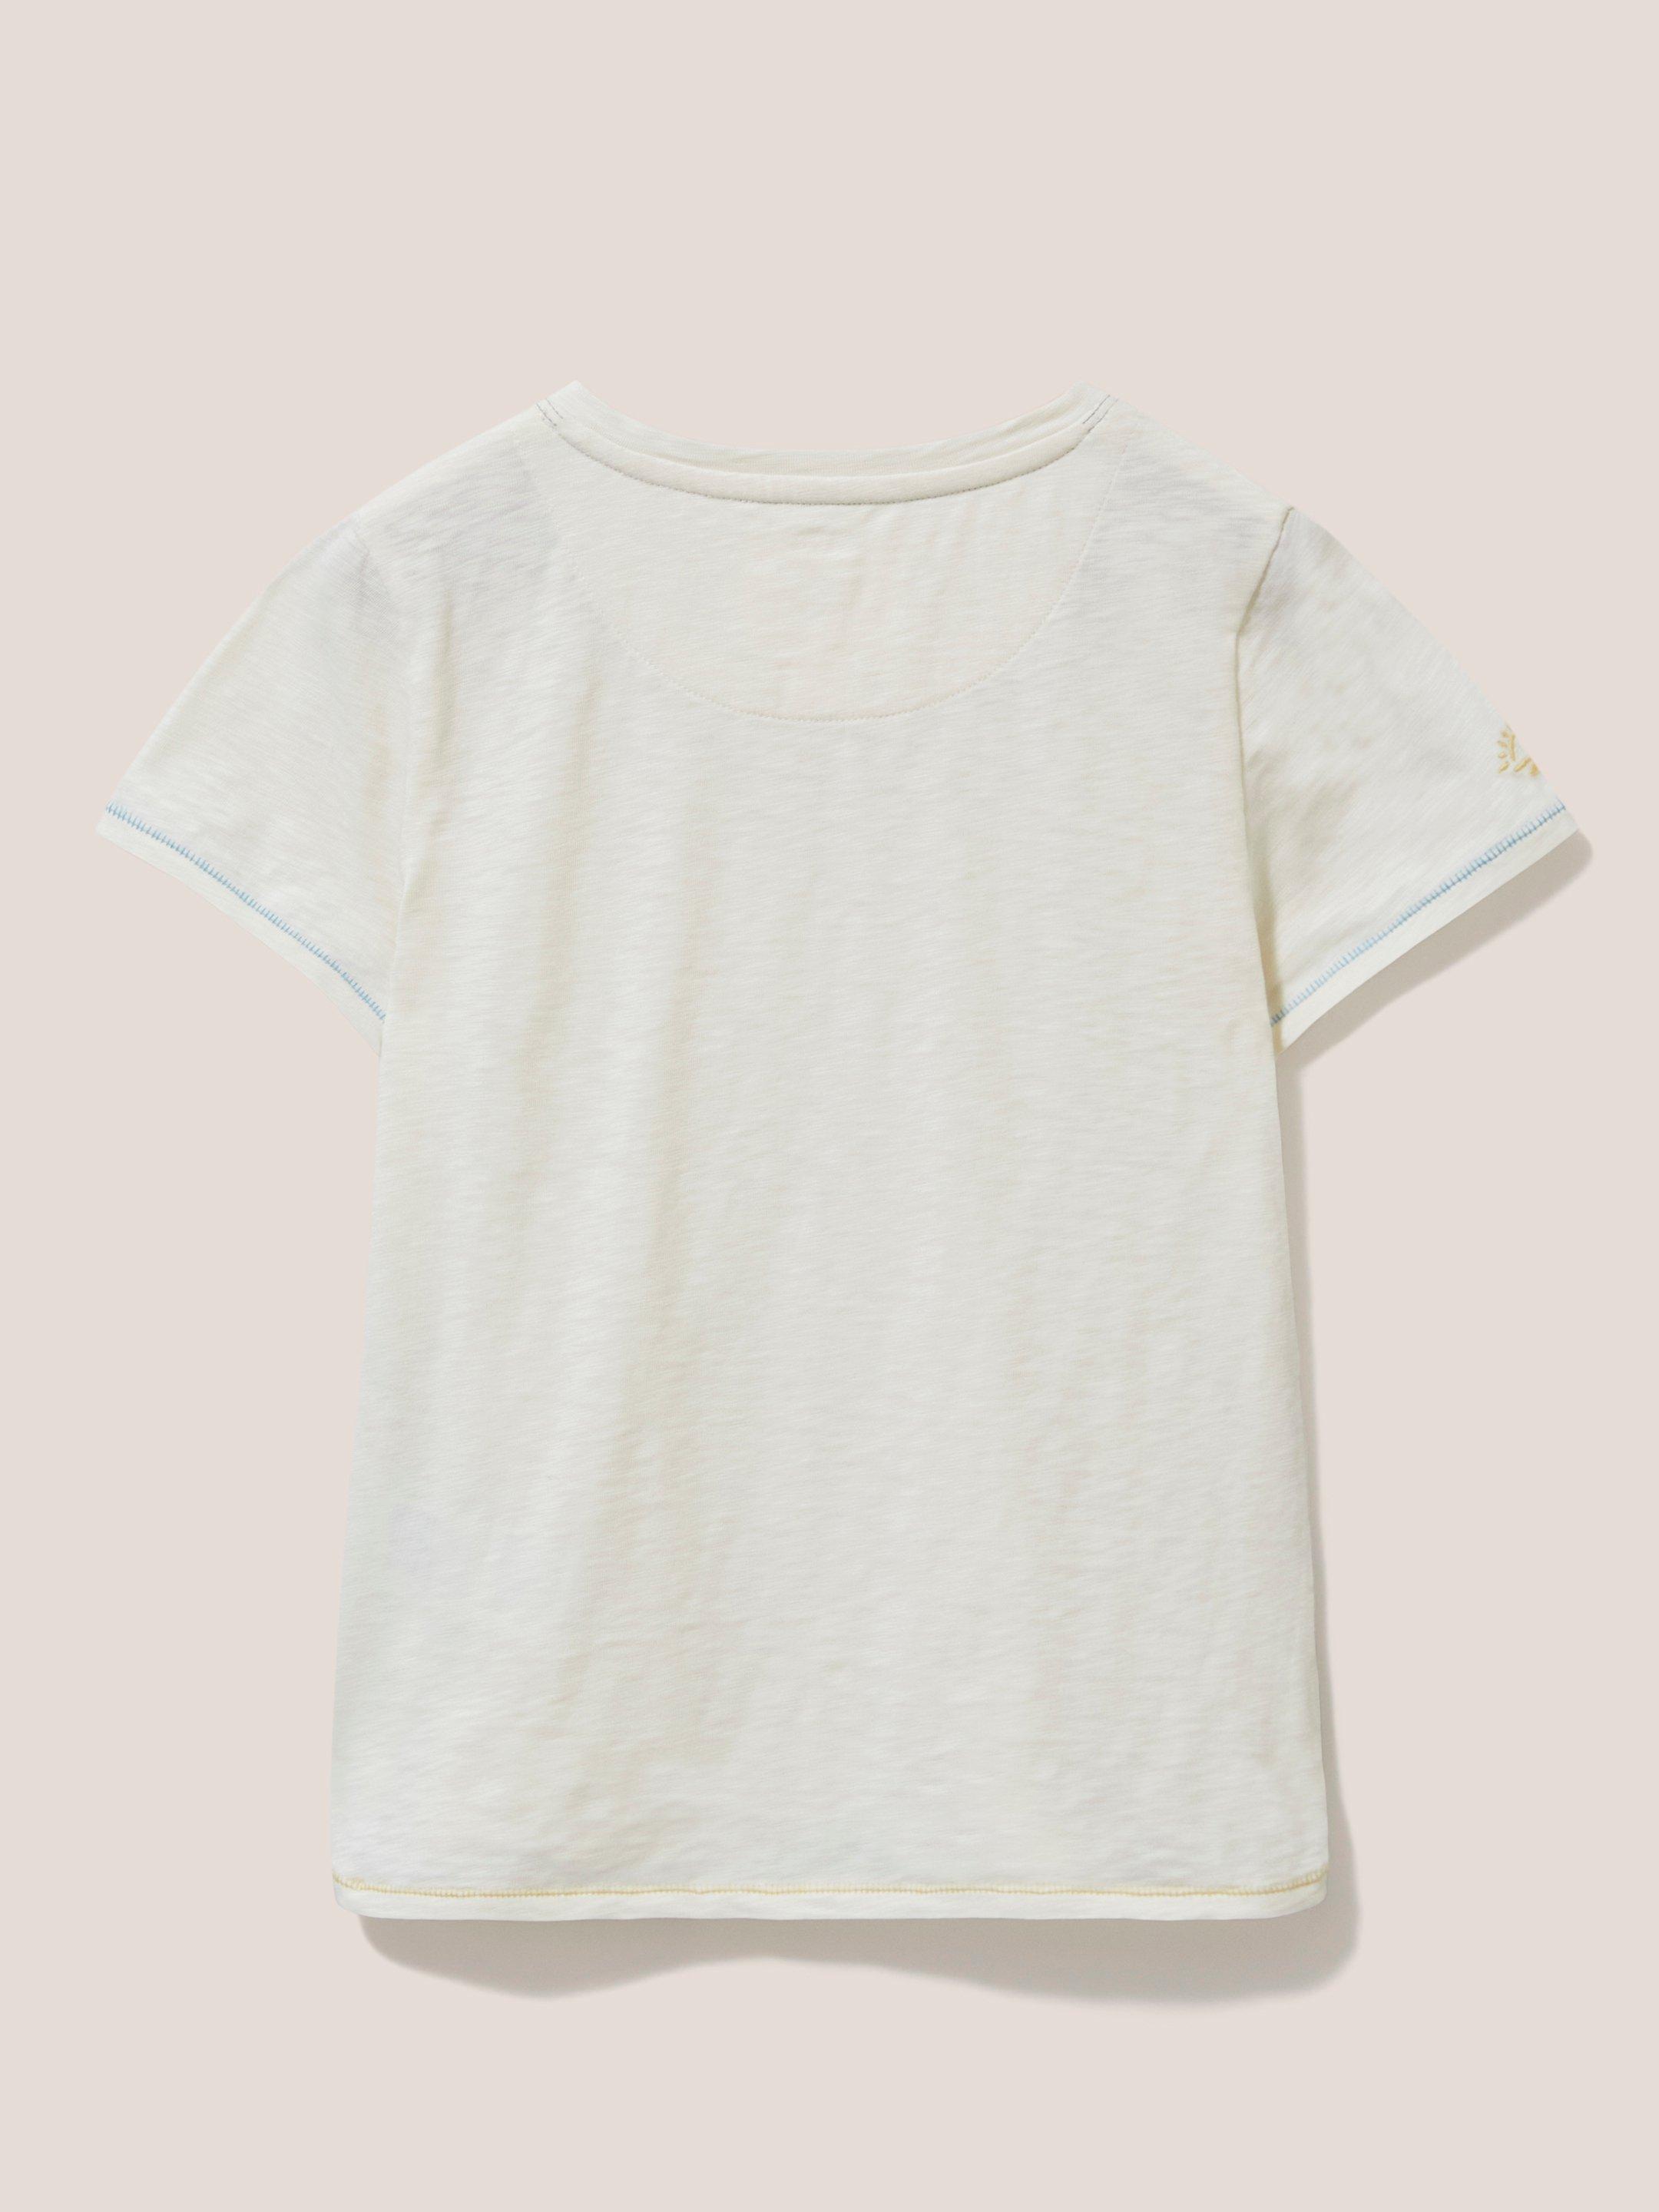 Casey Plain SS T Shirt in NAT WHITE - FLAT BACK